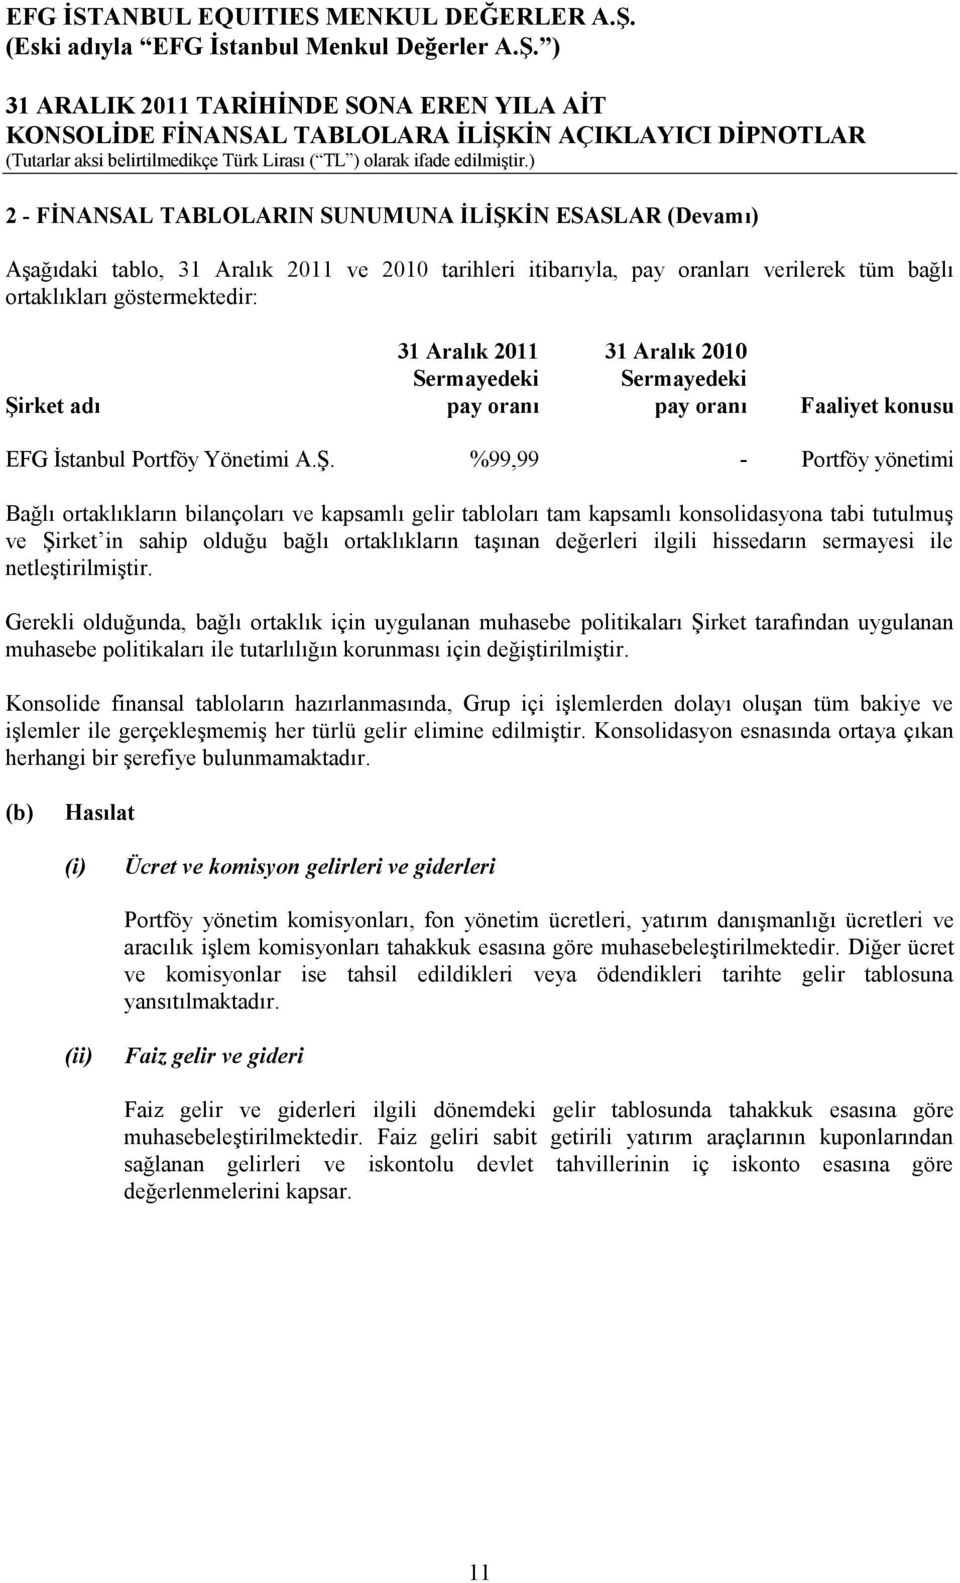 rket adı pay oranı pay oranı Faaliyet konusu EFG İstanbul Portföy Yönetimi A.Ş.